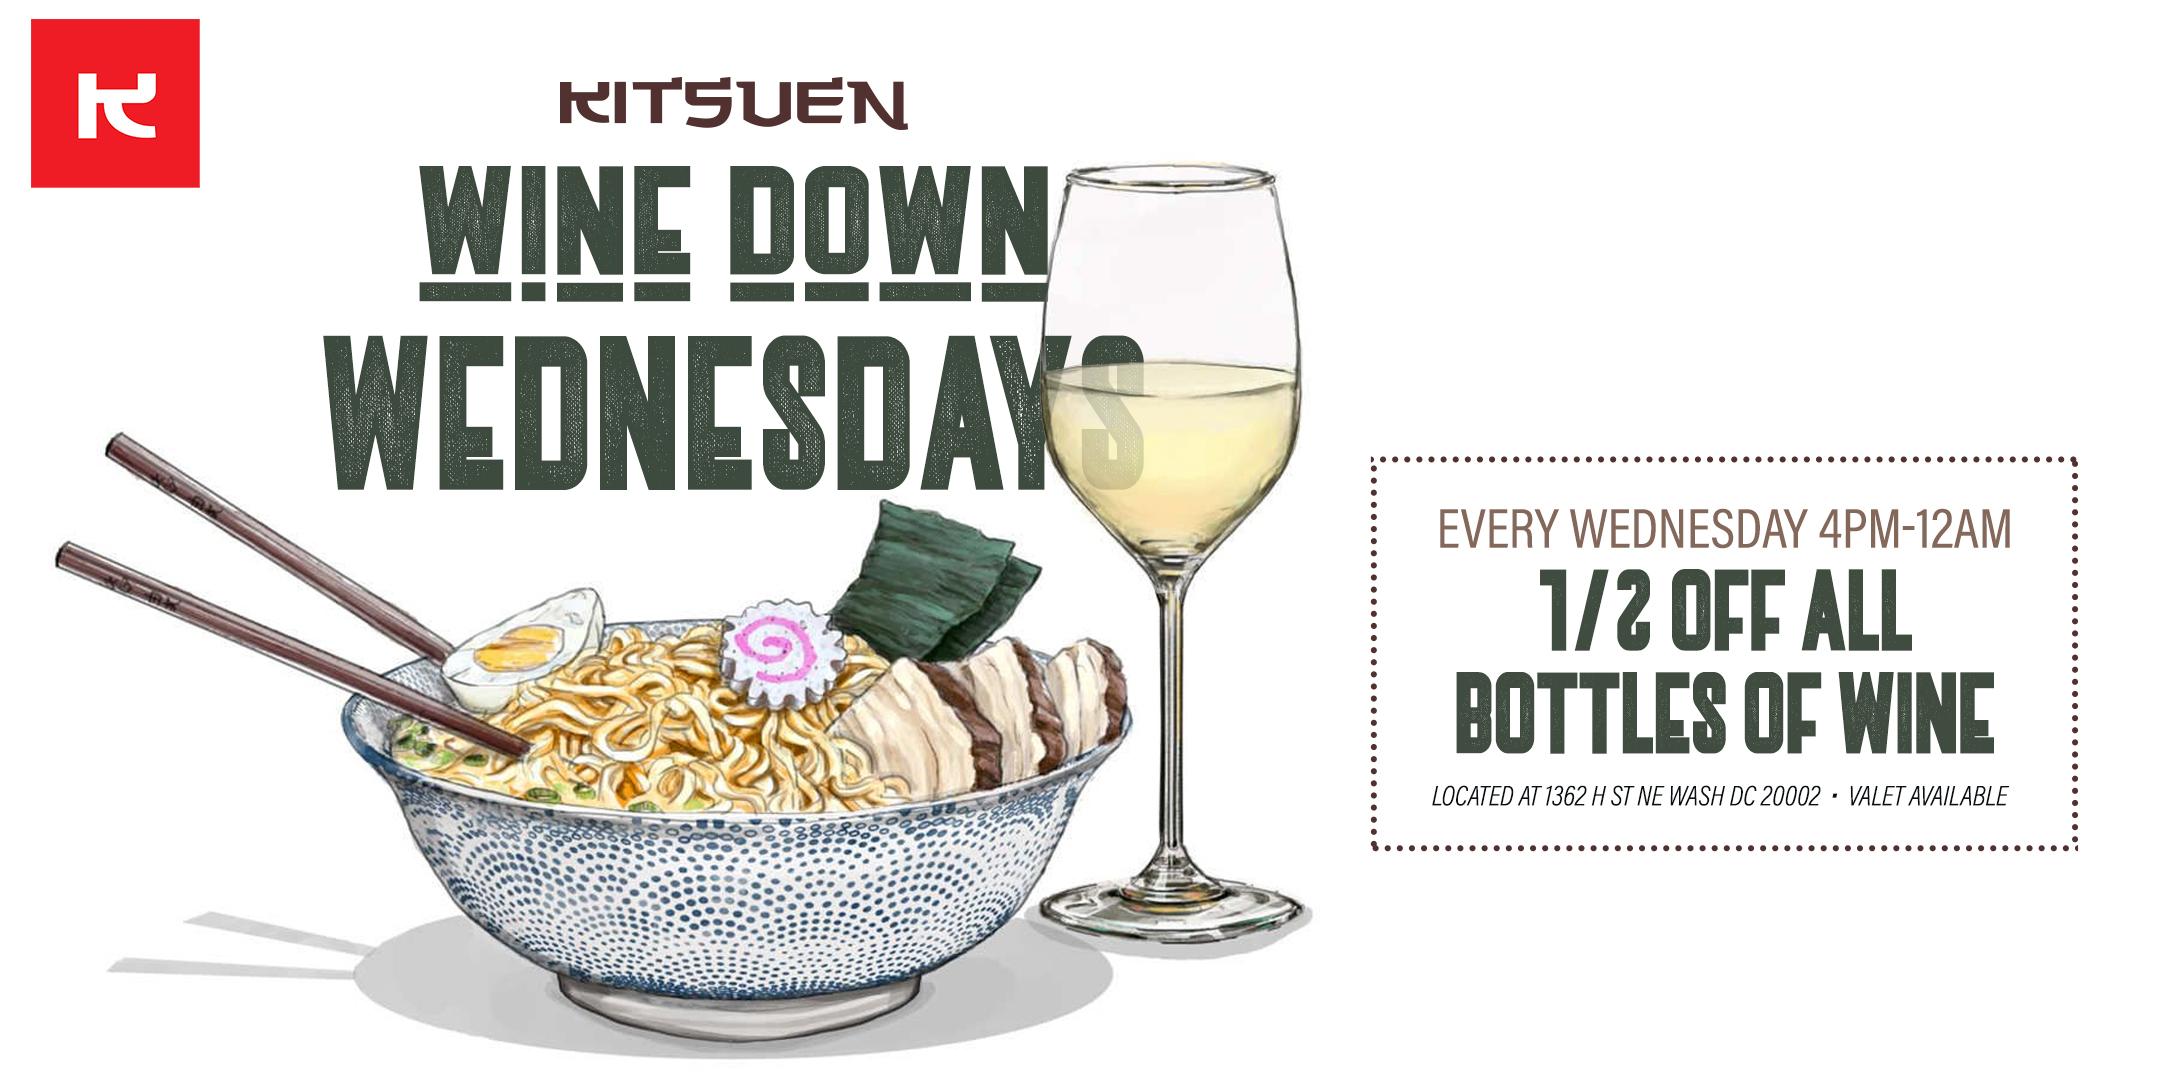 Kitsuen's Wine Down Wednesdays